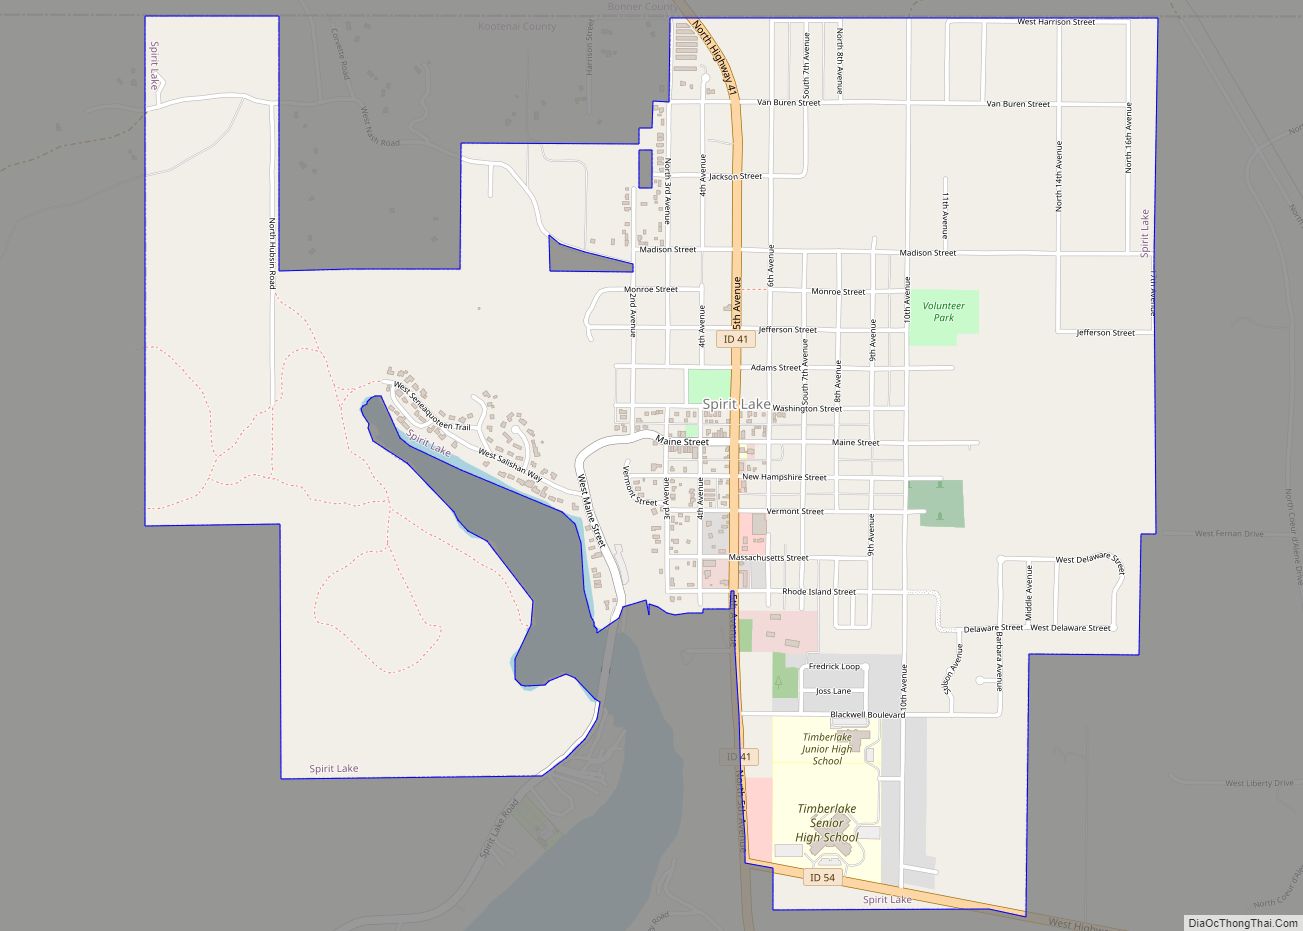 Map of Spirit Lake city, Idaho